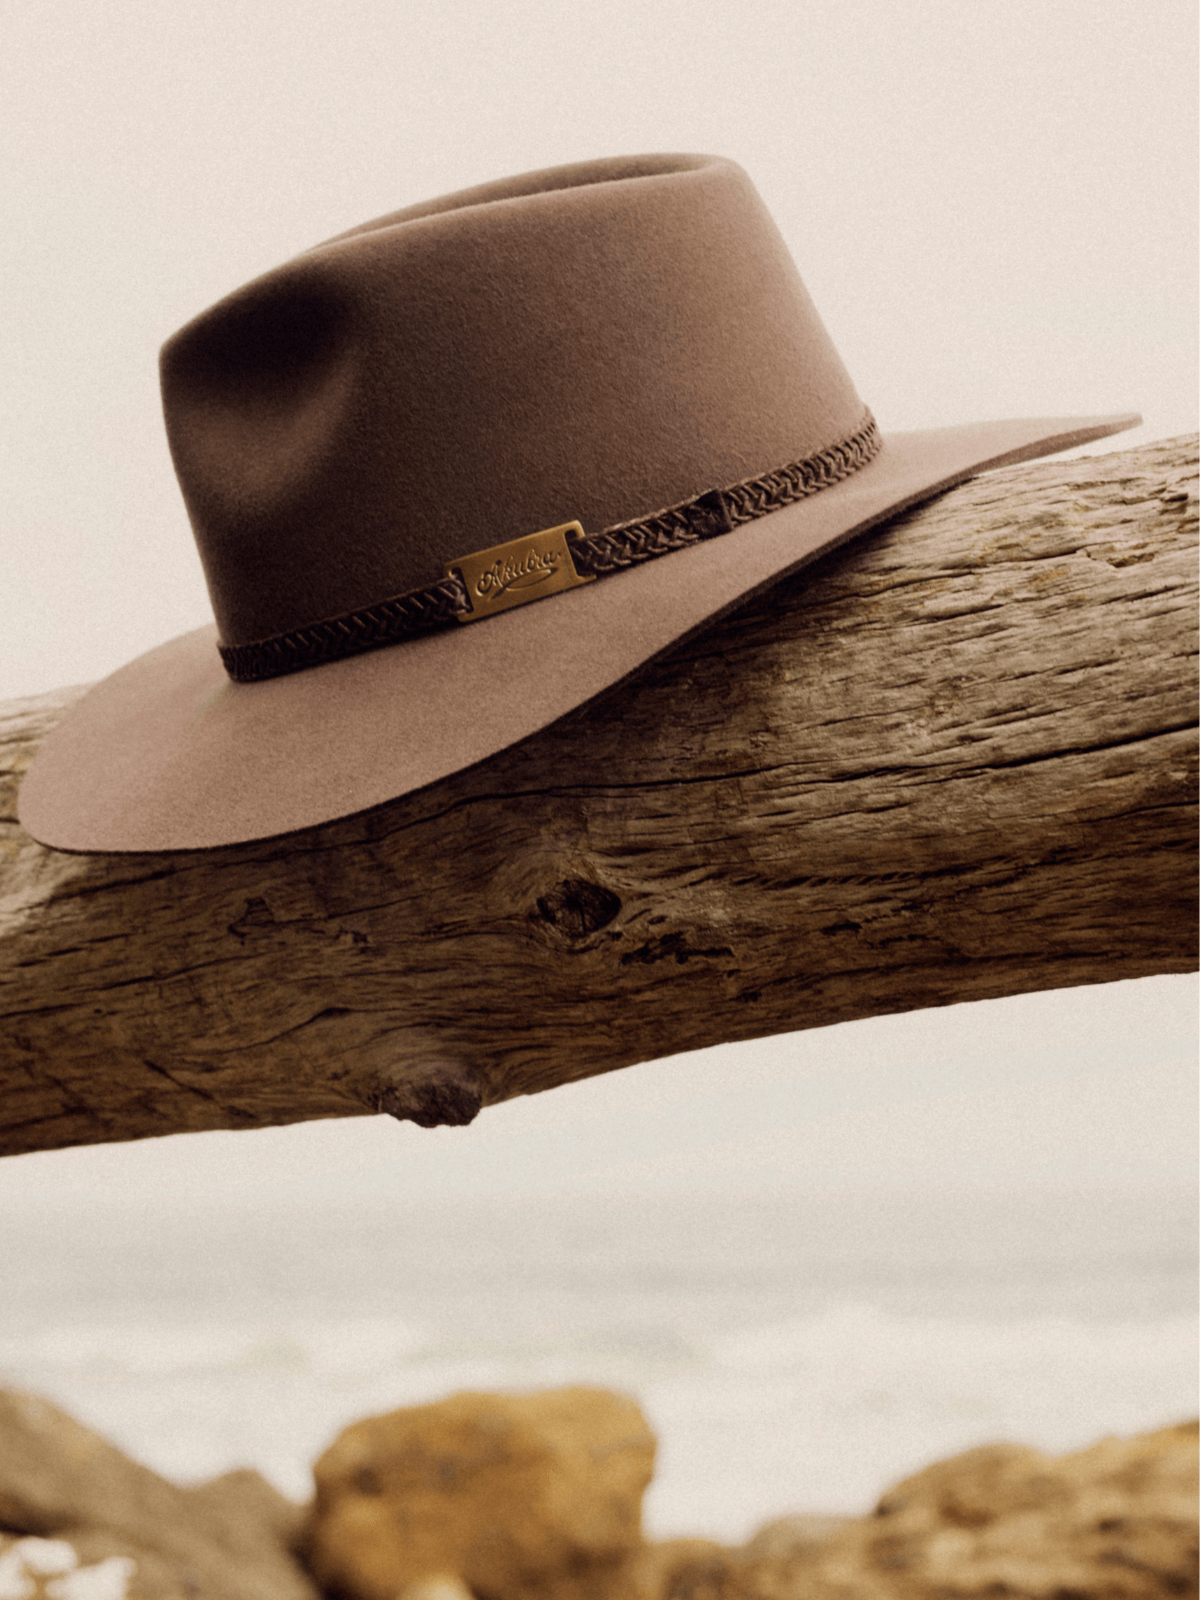 Akubra Hats - Australian Made since 1876